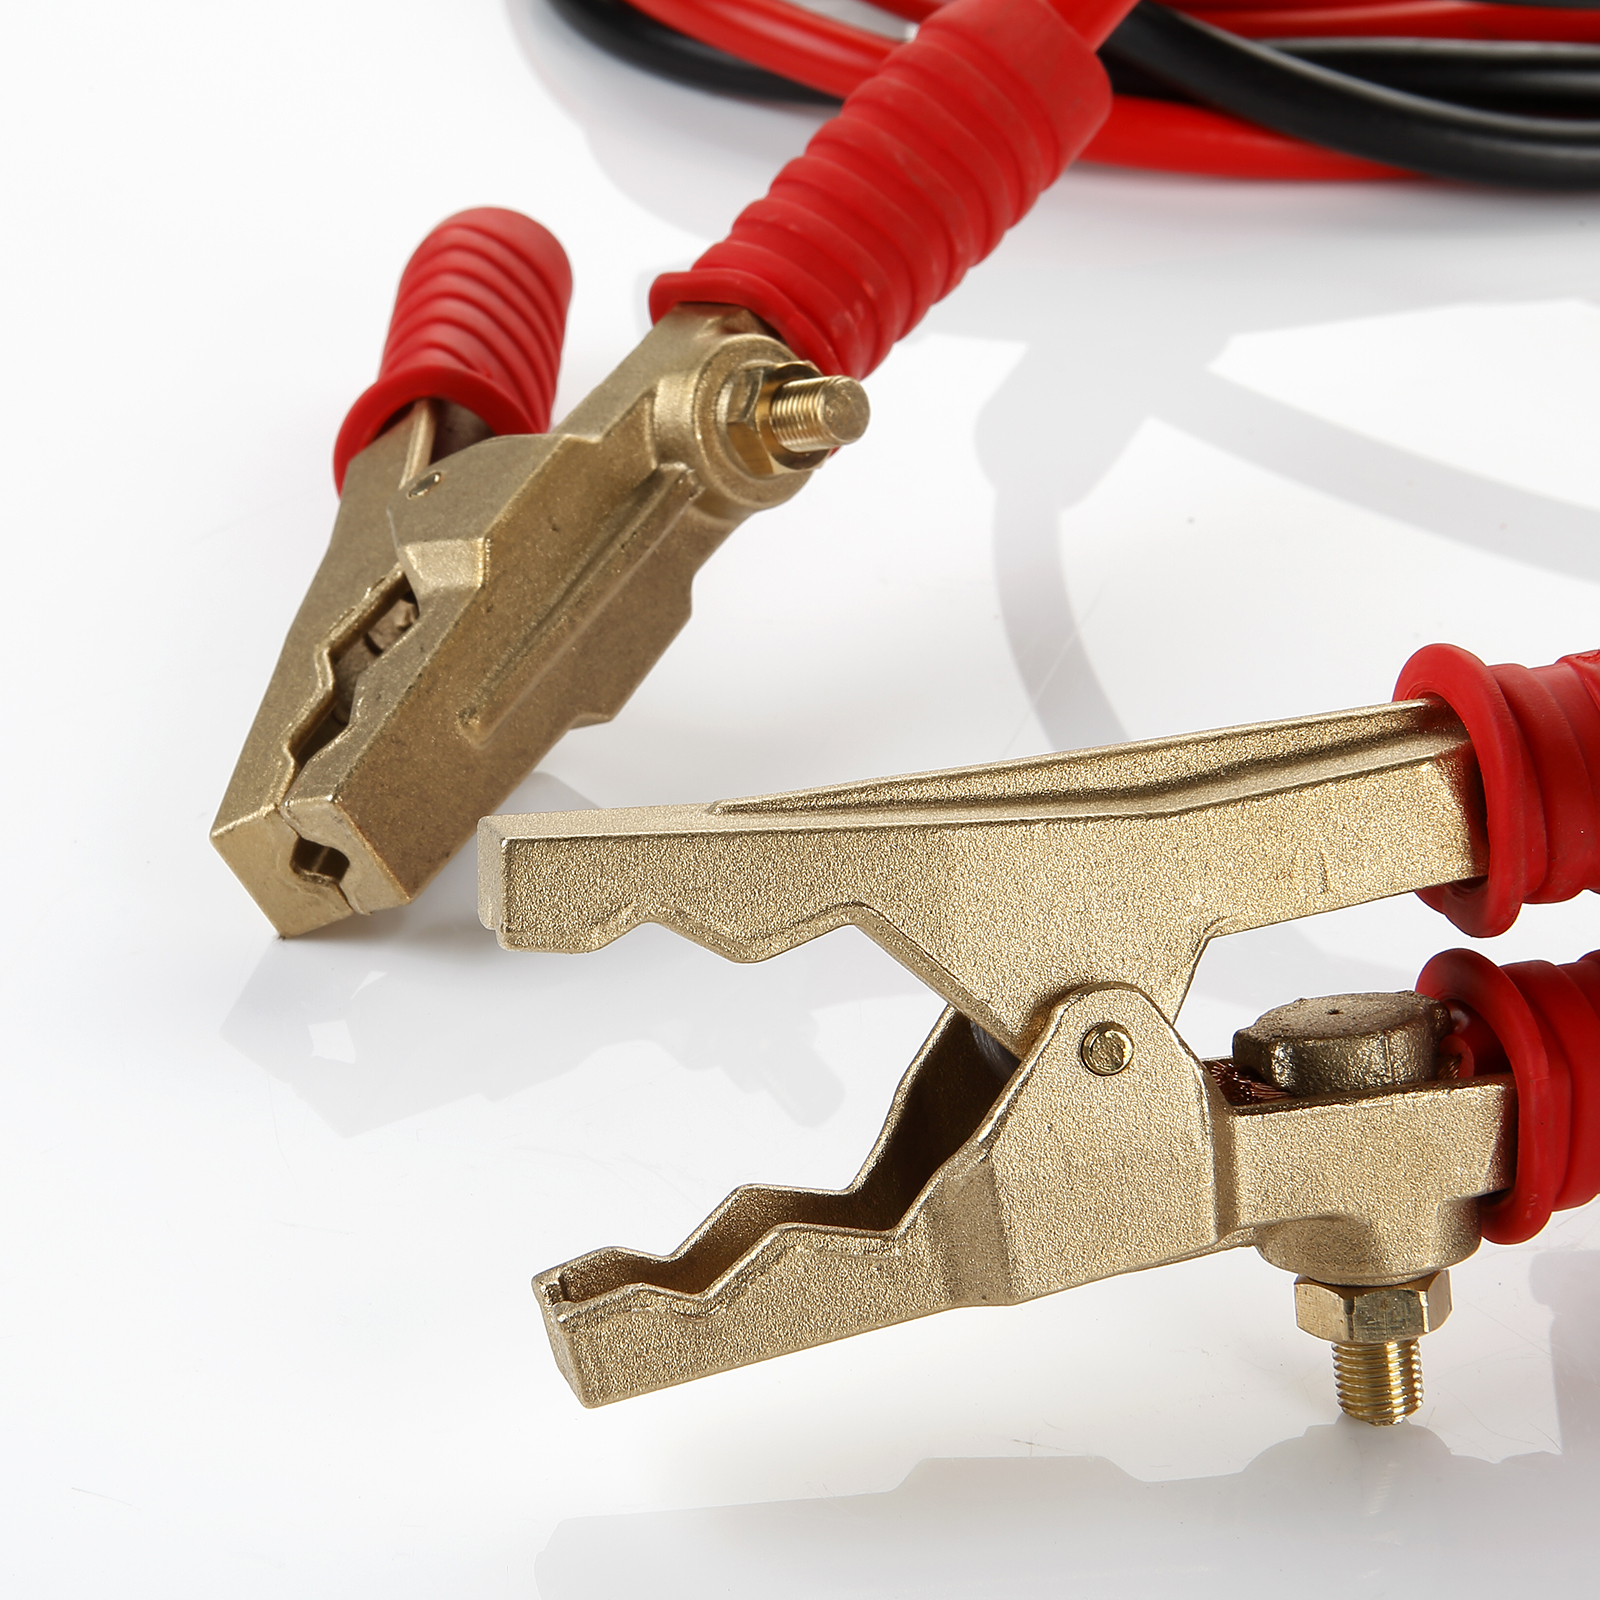 Câbles de démarrage cuivre 2x4,5m - 35mm² - 800A - 04163 - Drakkar  Equipement